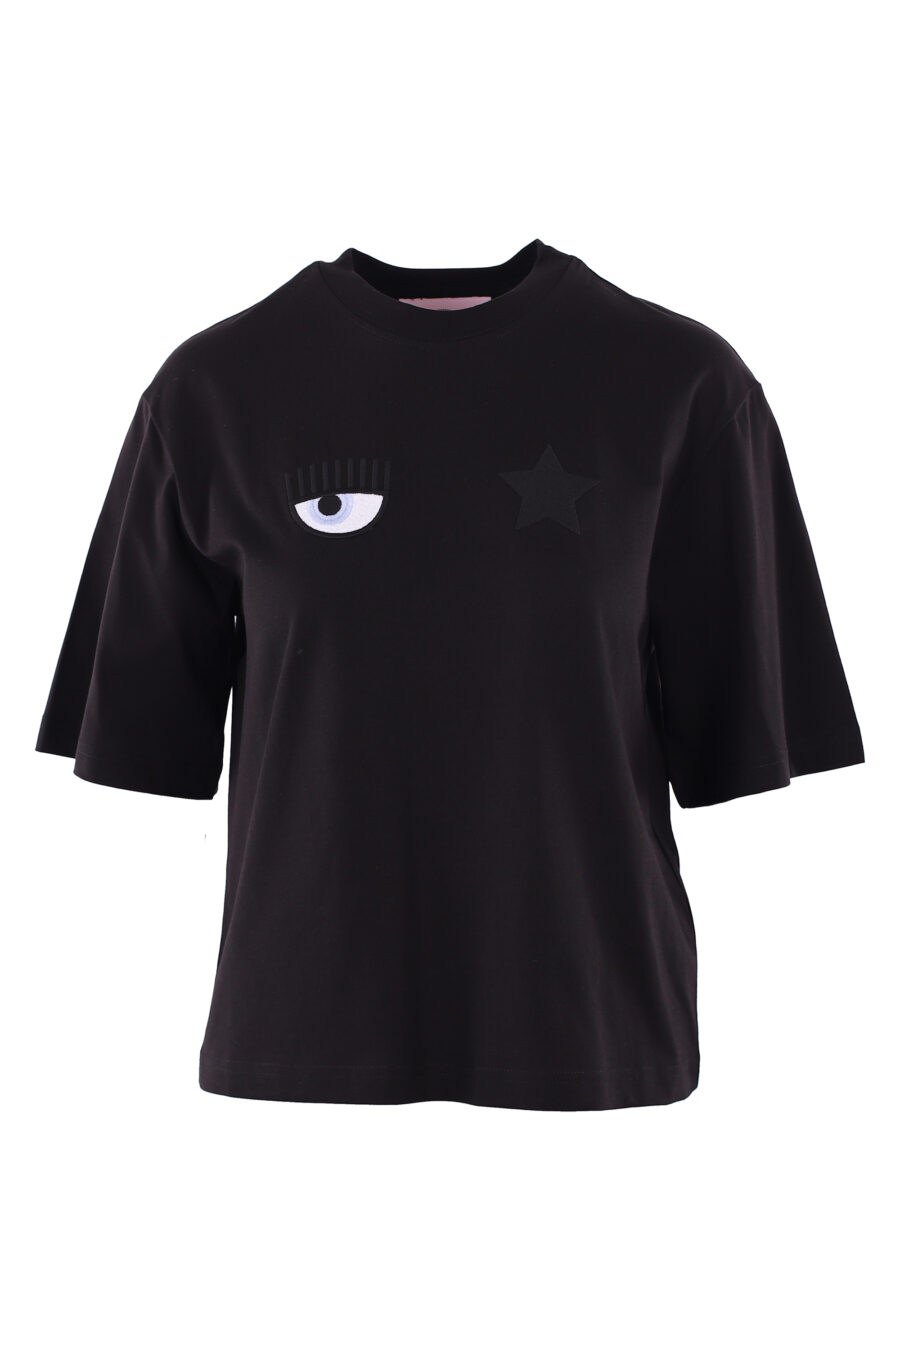 Camiseta negra con logo ojo y estrella - IMG 6116